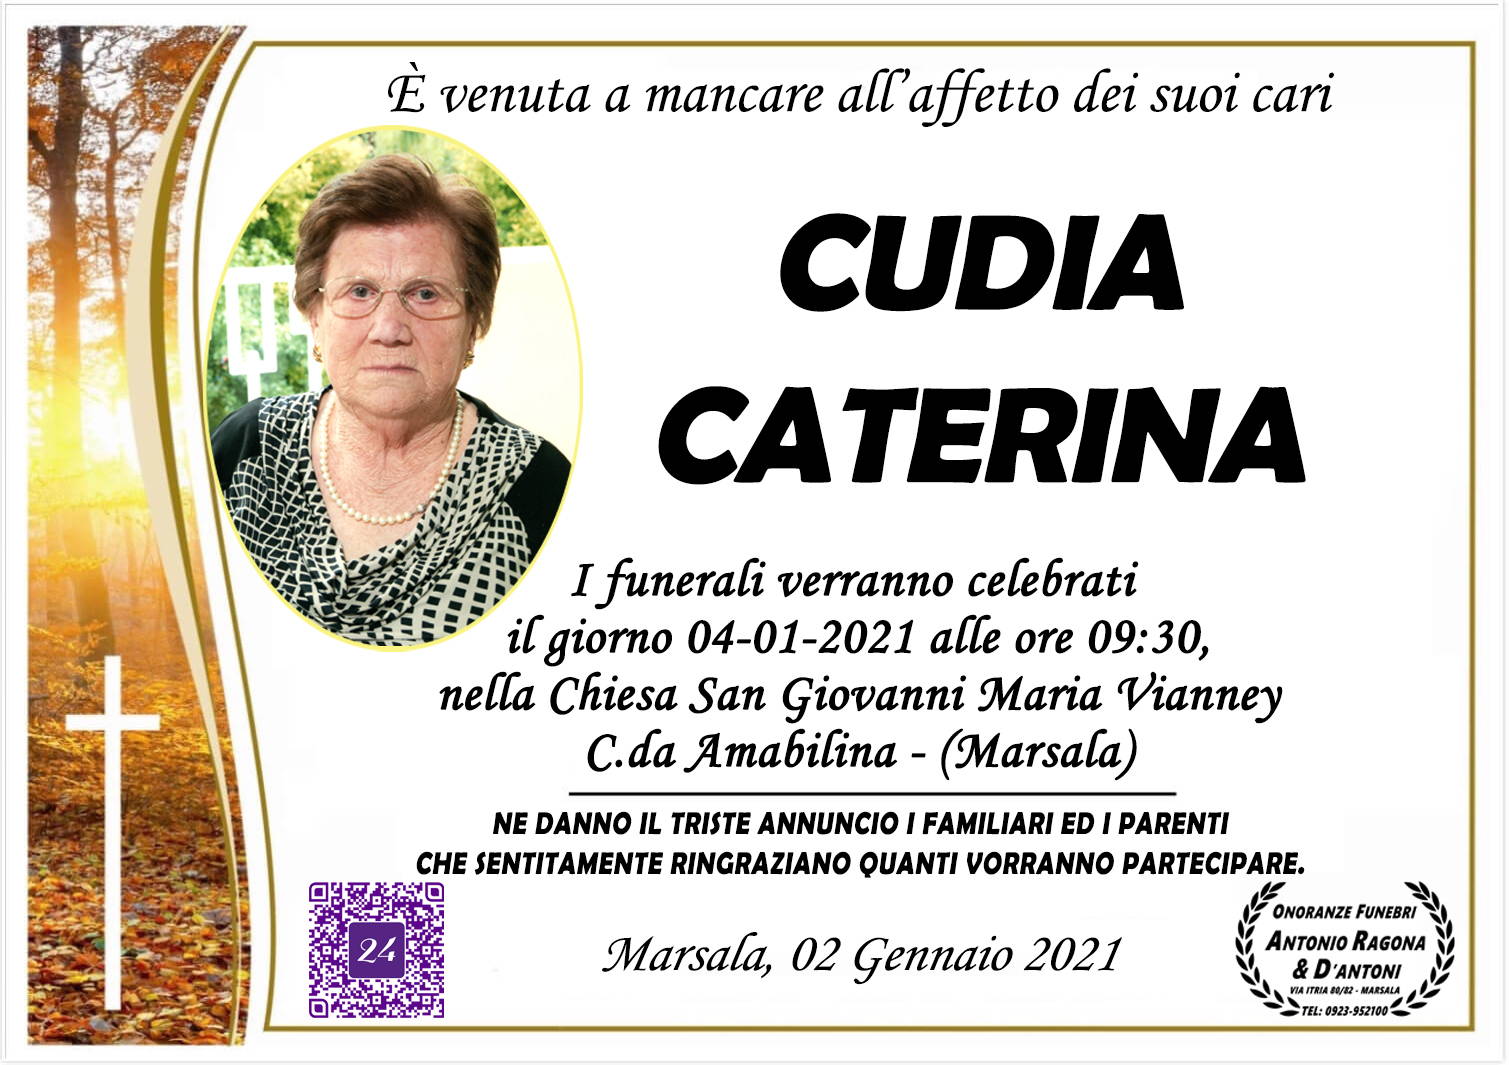 Caterina Cudia